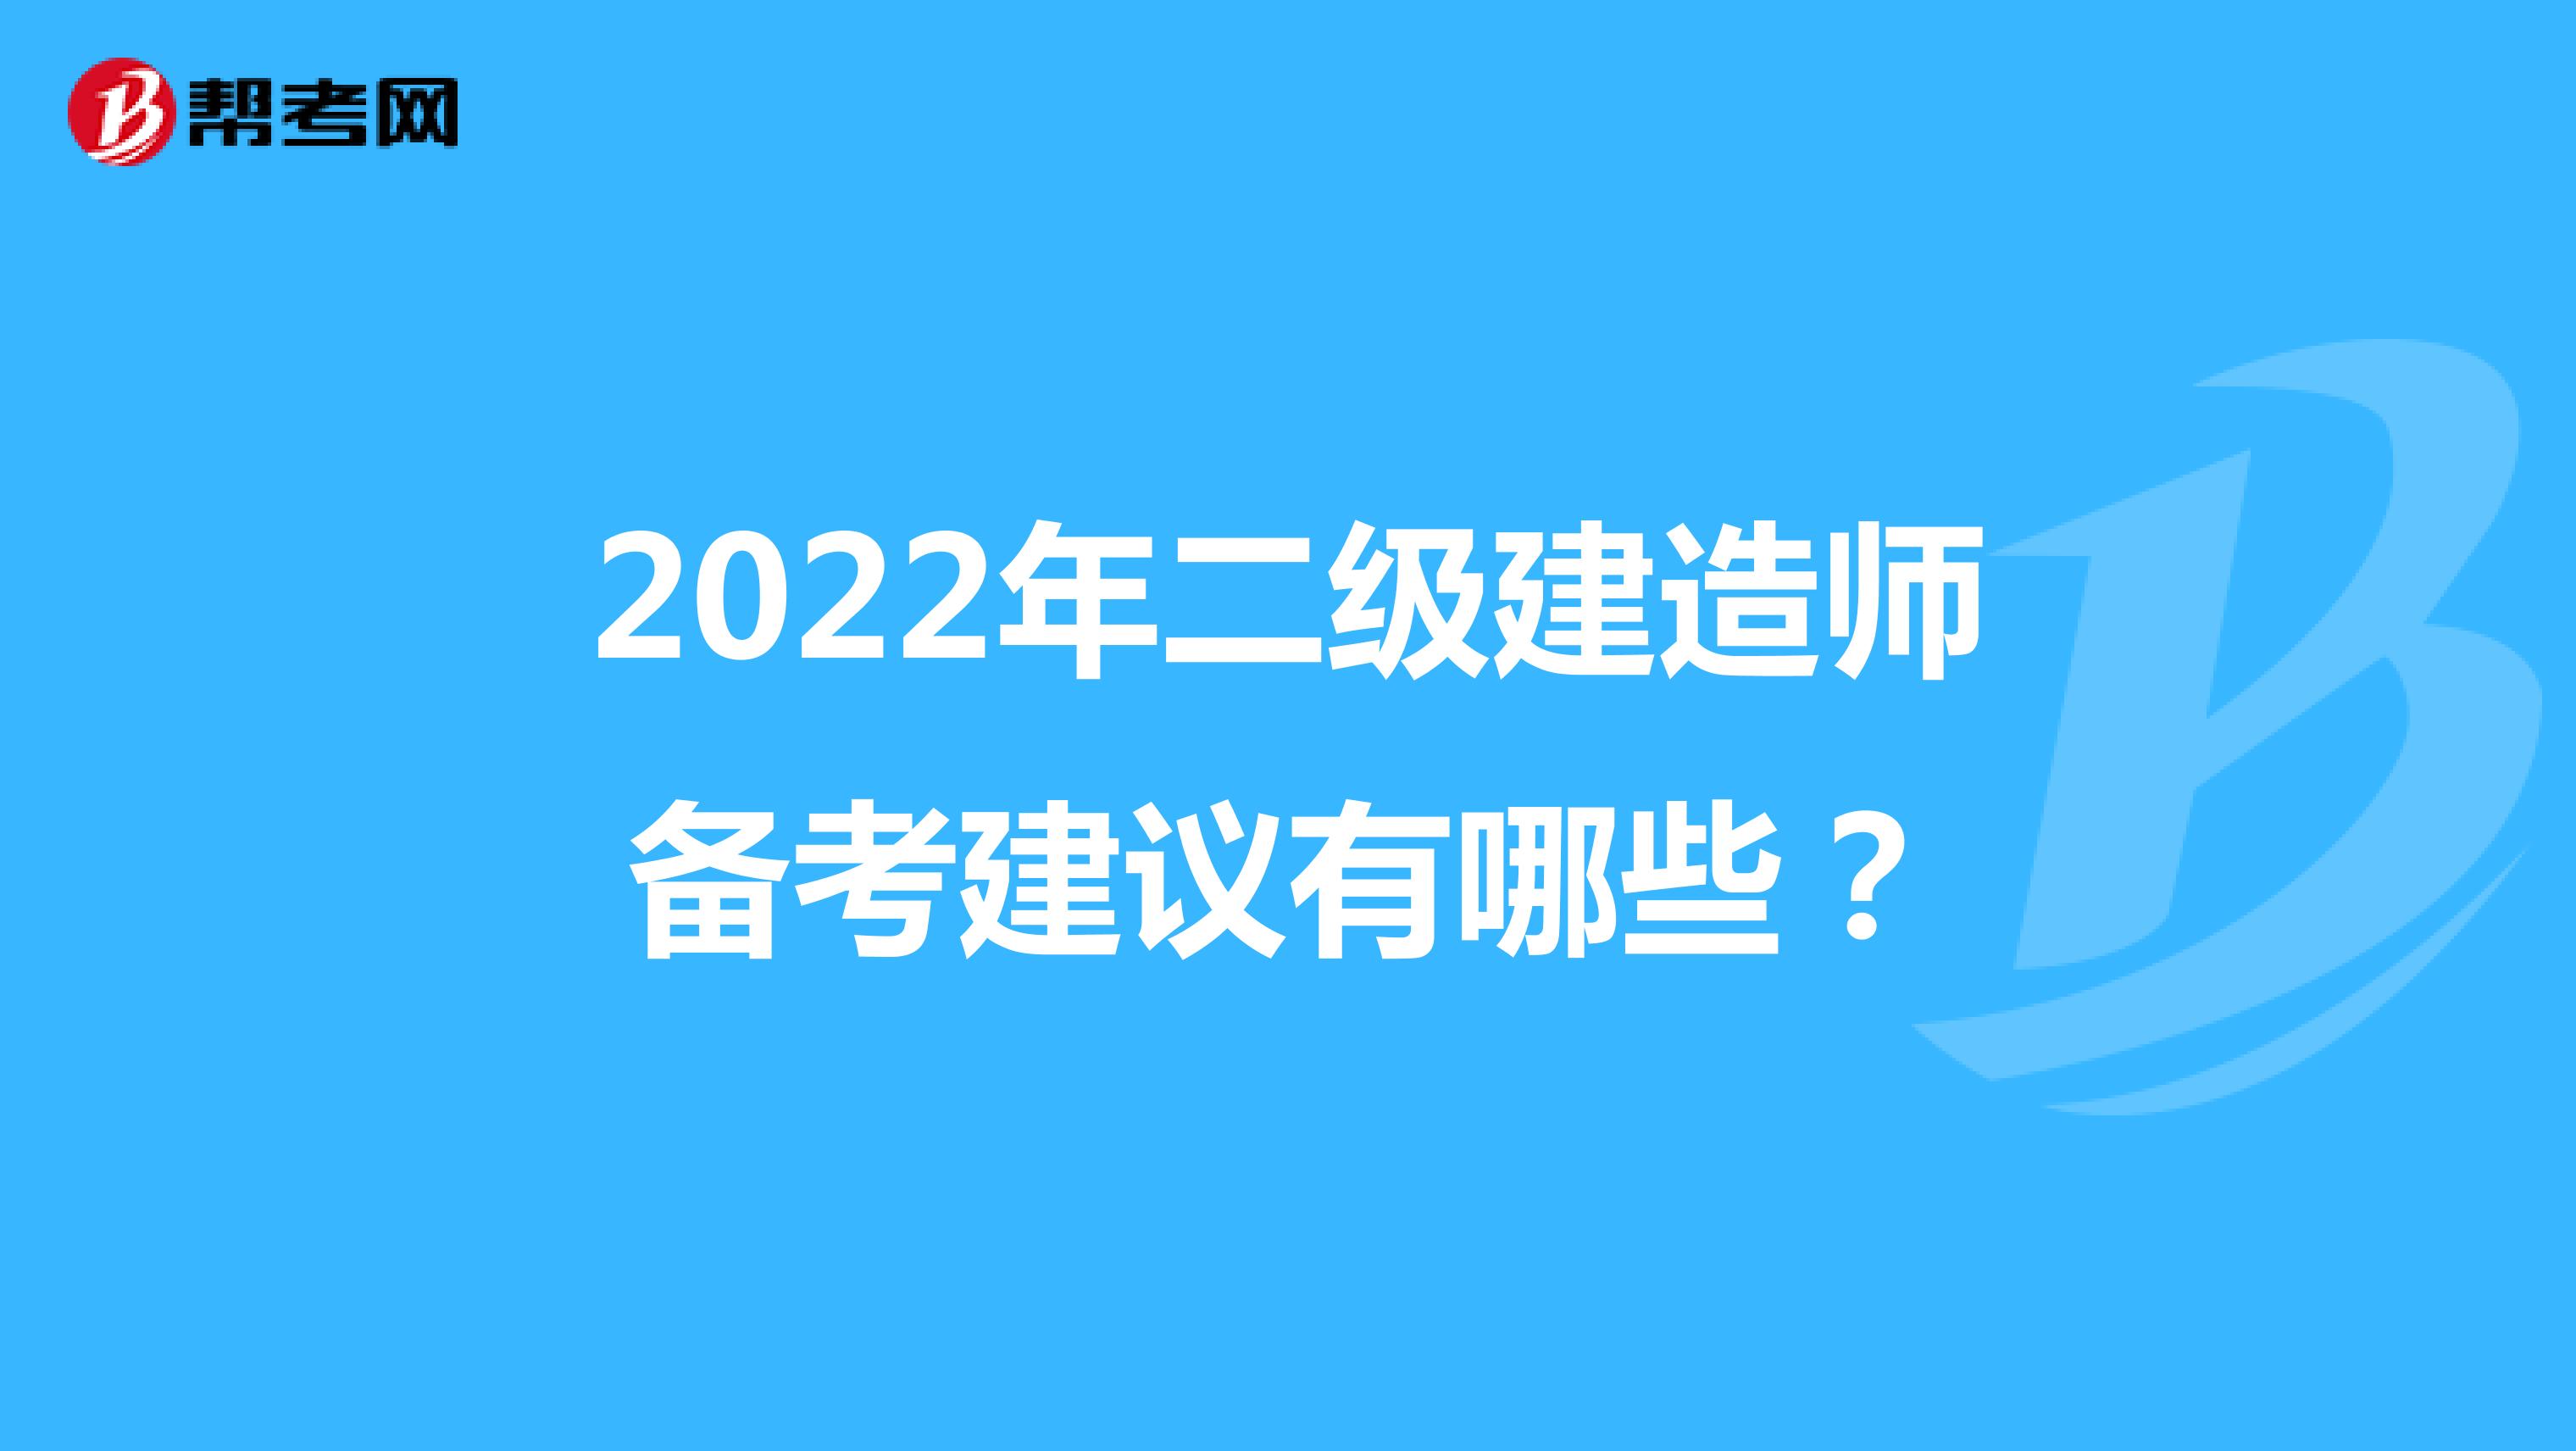 2022年二级建造师备考建议有哪些？